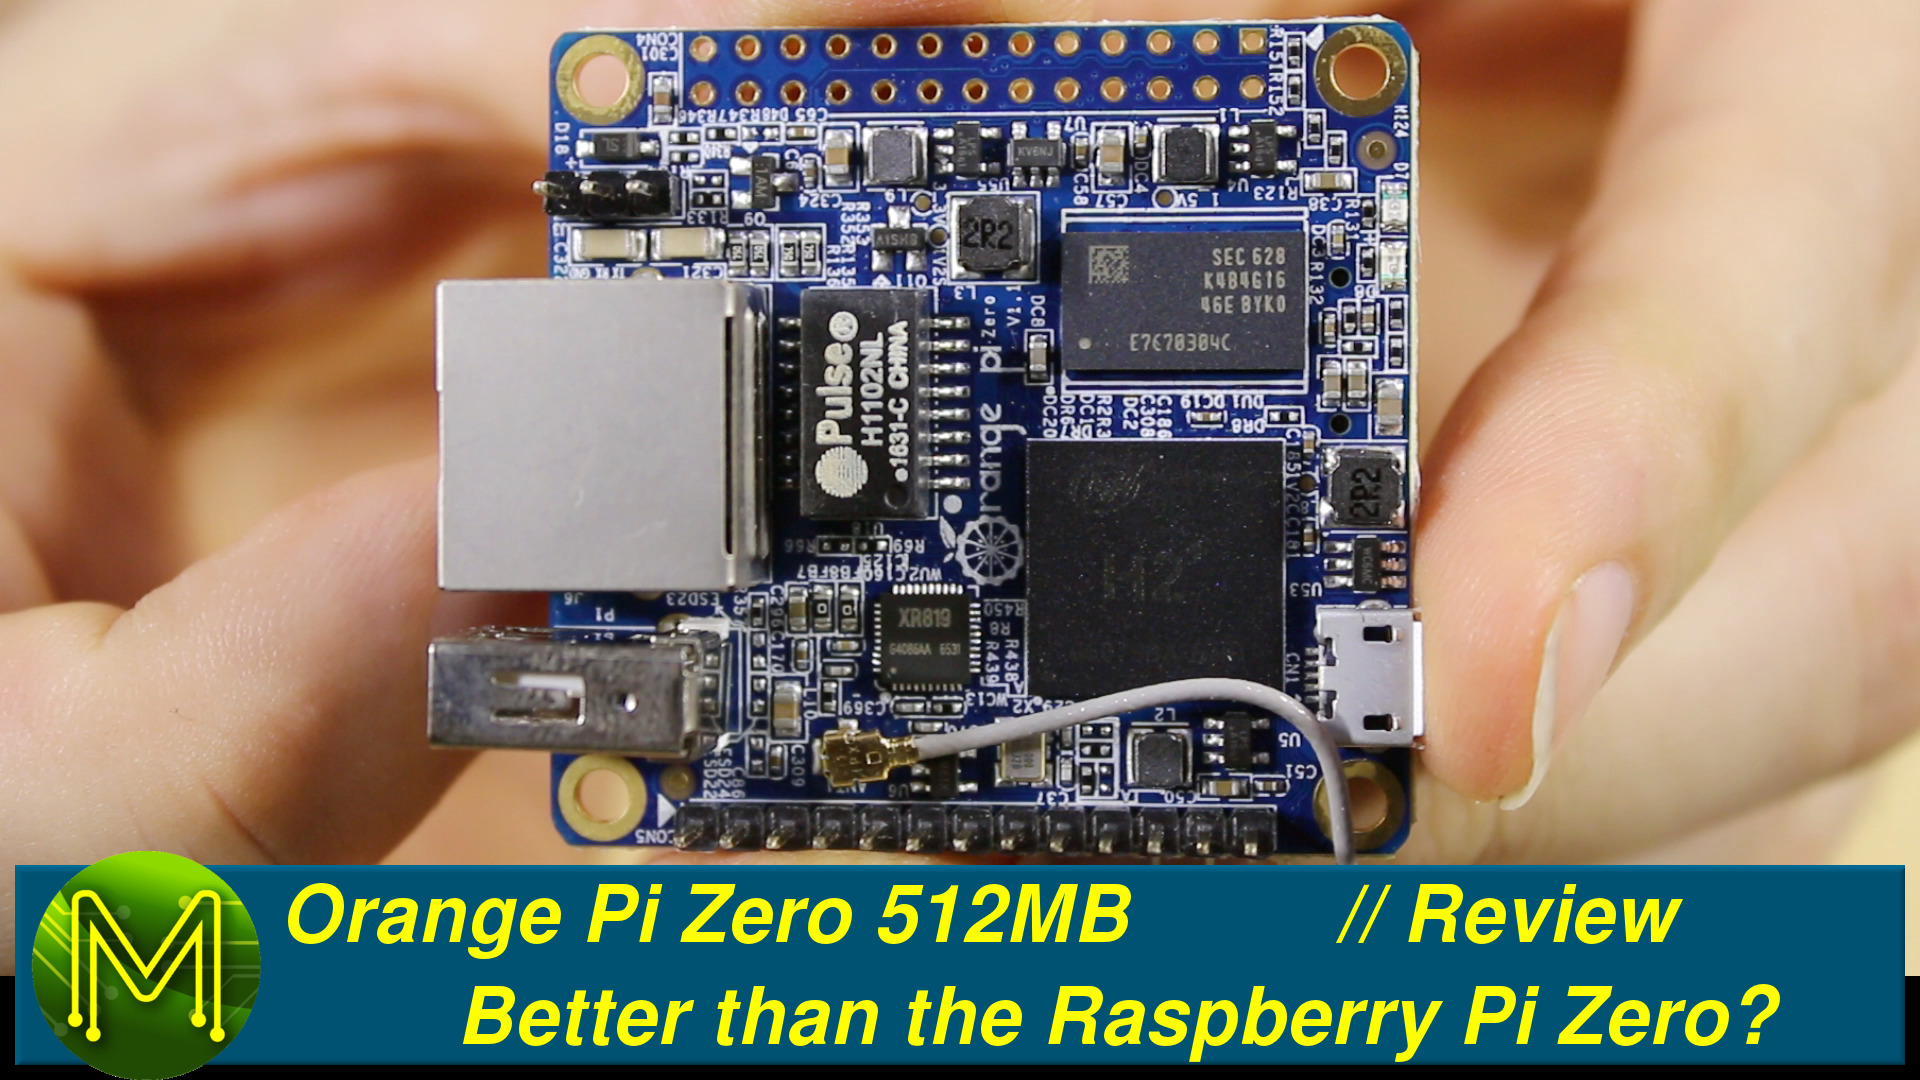 Orange Pi Zero 2W is a Raspberry Pi Zero lookalike with Allwinner